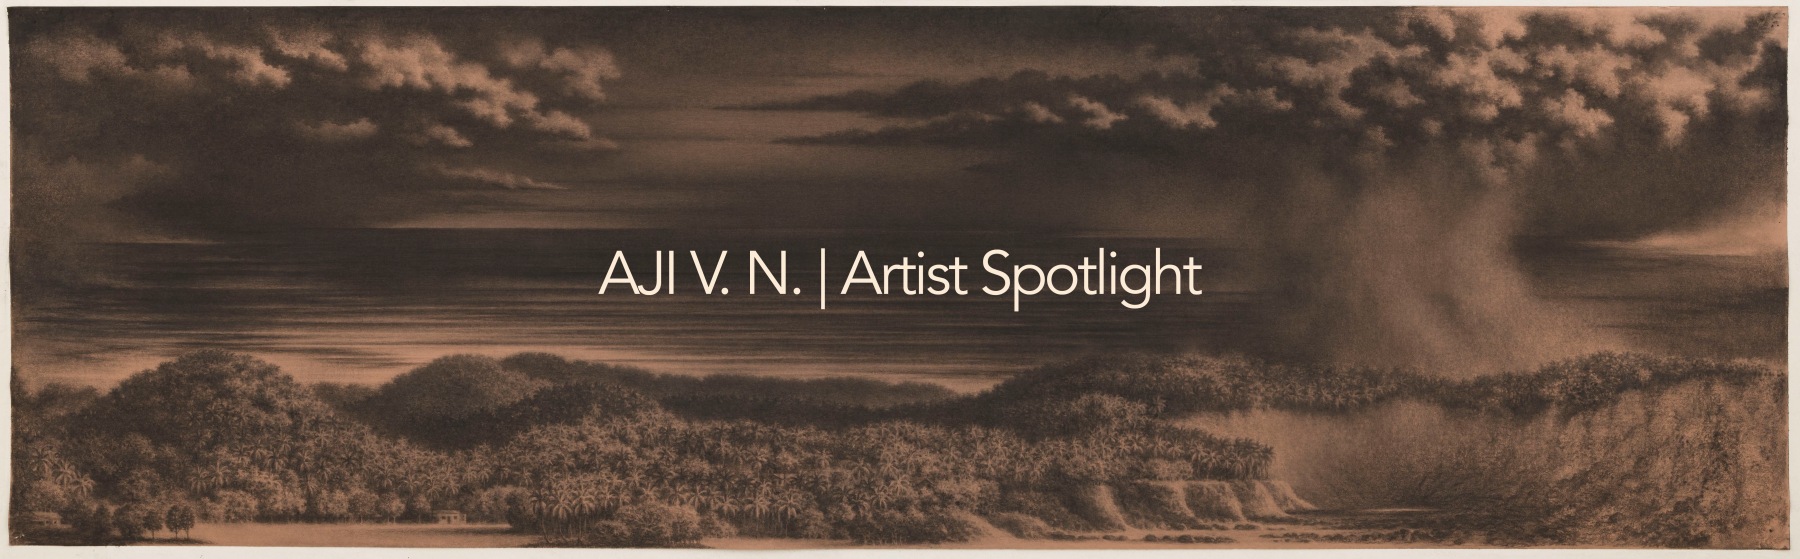 AJI V.N. | Artist Spotlight